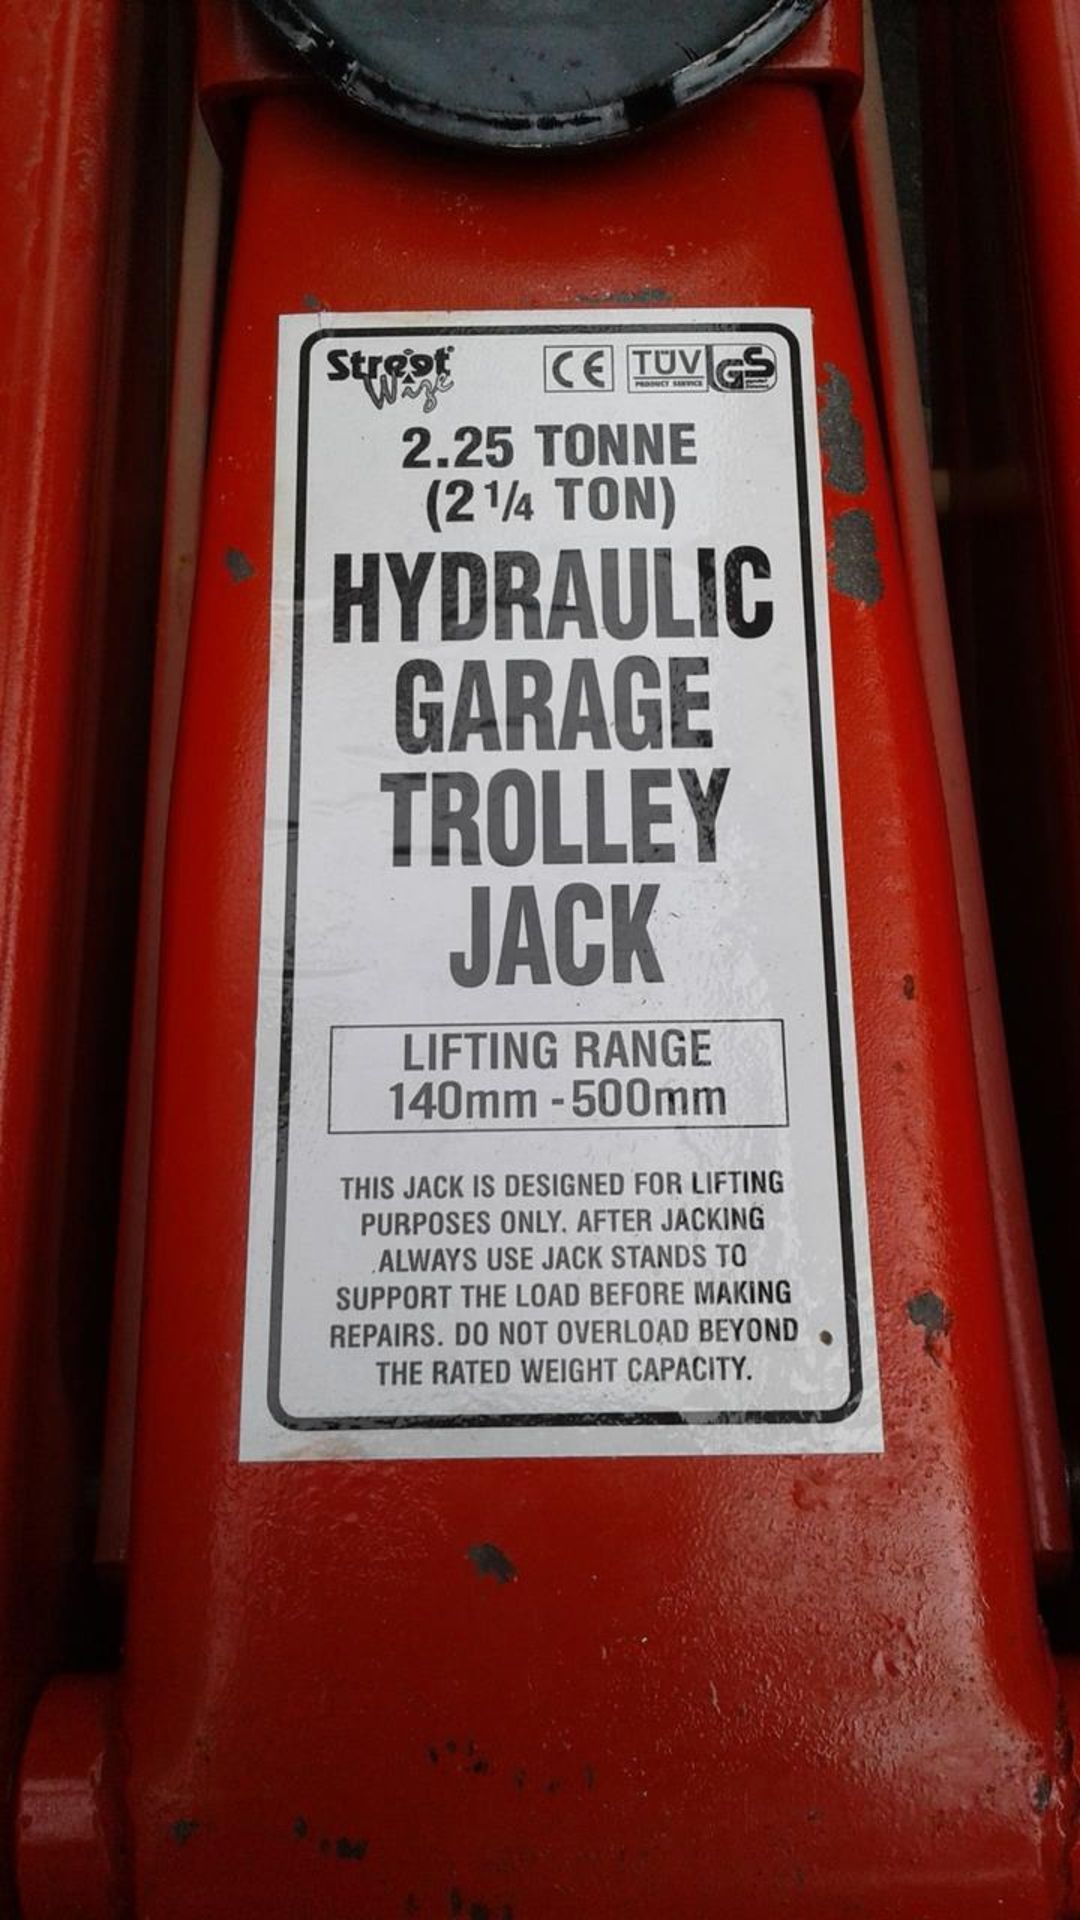 Large size 2.25 Tonne Hydraulic Garage trolley Jack - New - unboxed unused - Image 3 of 3